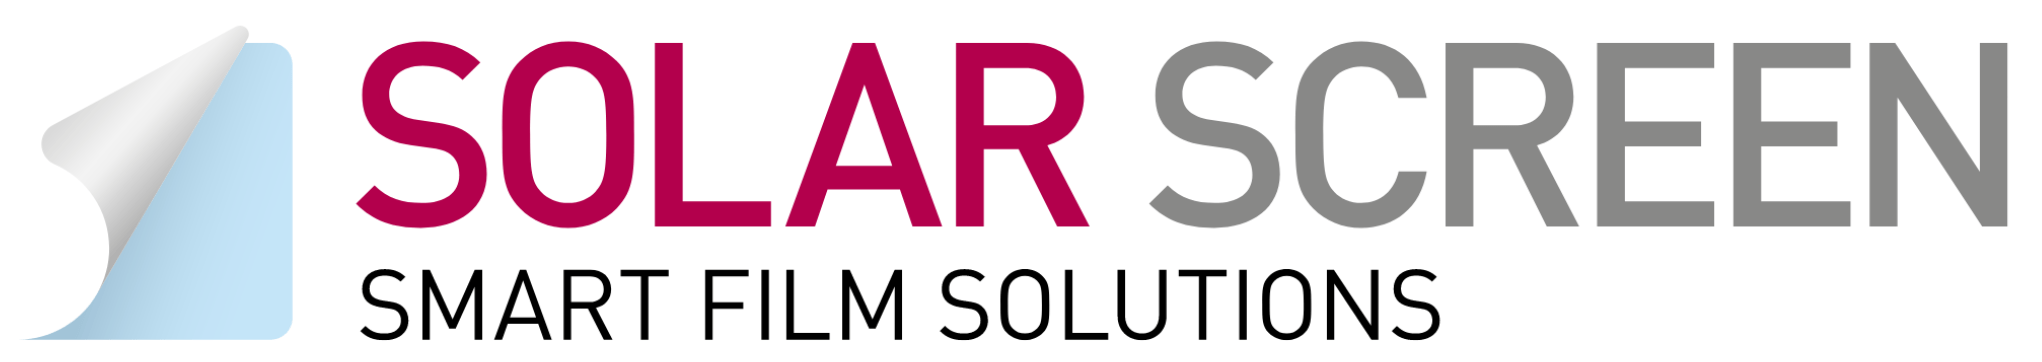 logo solar screen